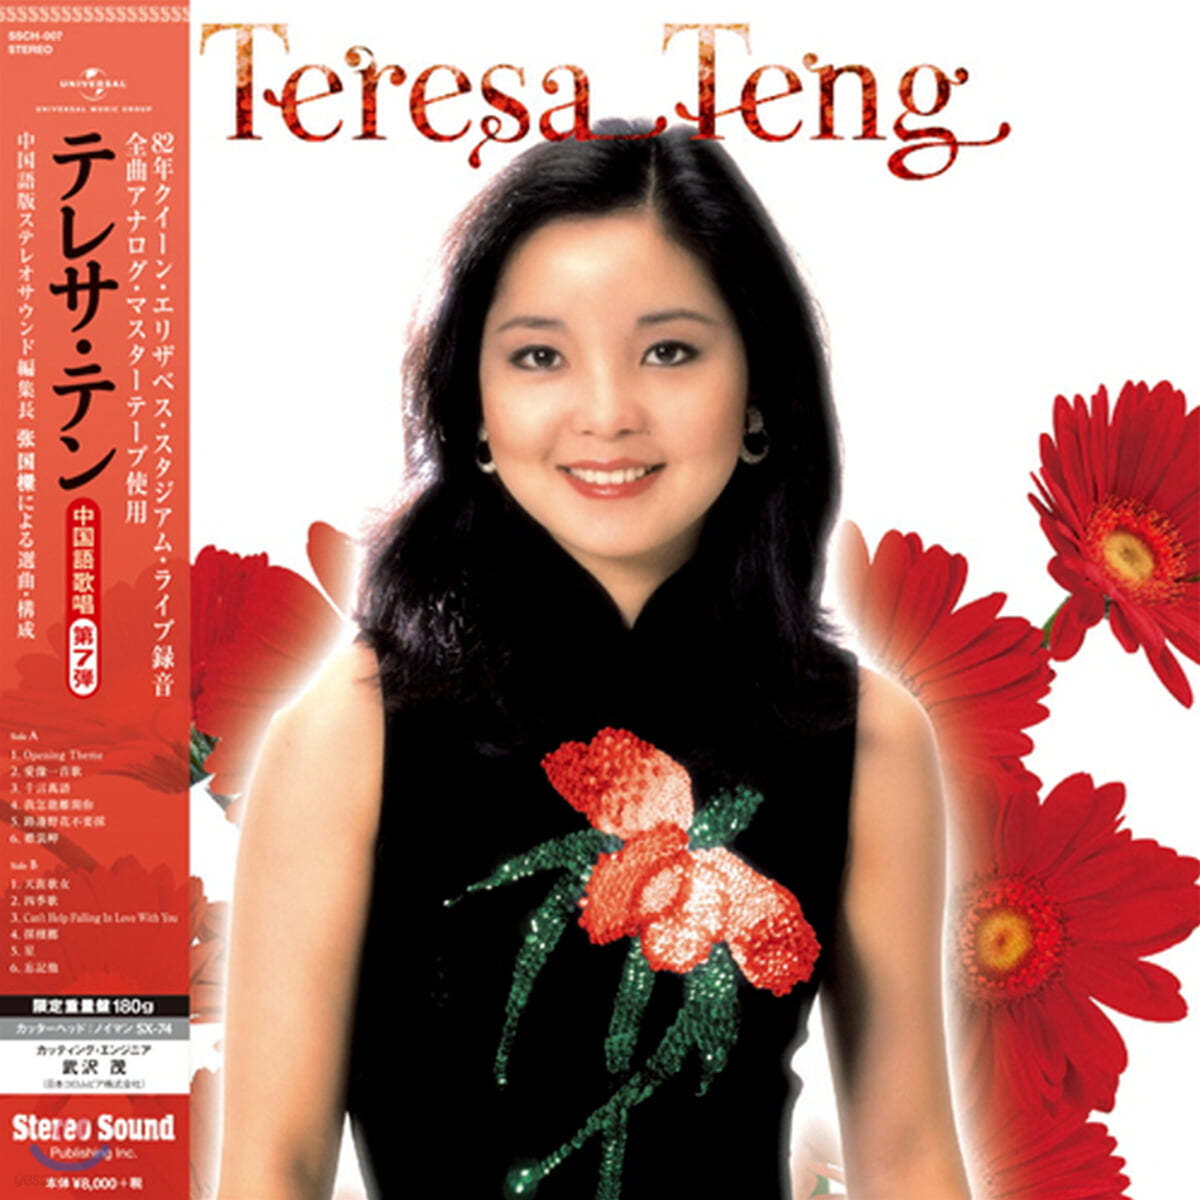 Teresa Teng (등려군) - 등려군 중국어 명곡 7탄 (Chinese Songs Vol. 7) [LP] 